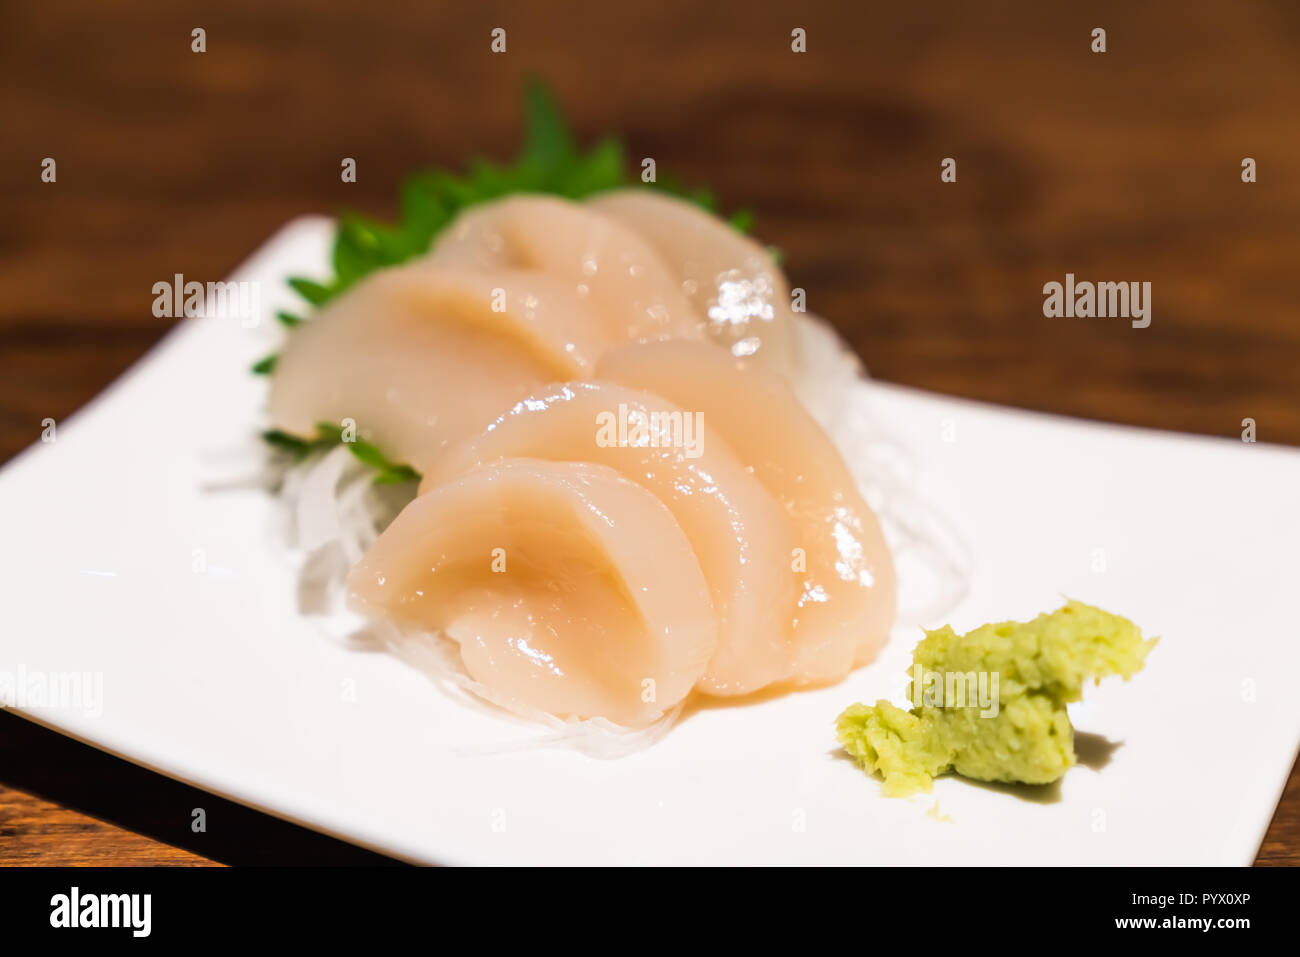 Cappasanta cruda sashimi o hotate sashimi serviti con wasabi sul piatto, Giapponese famoso deliziosi piatti di pesce crudo pasto. Cibo asiatico, Giappone tradizionale menu Foto Stock